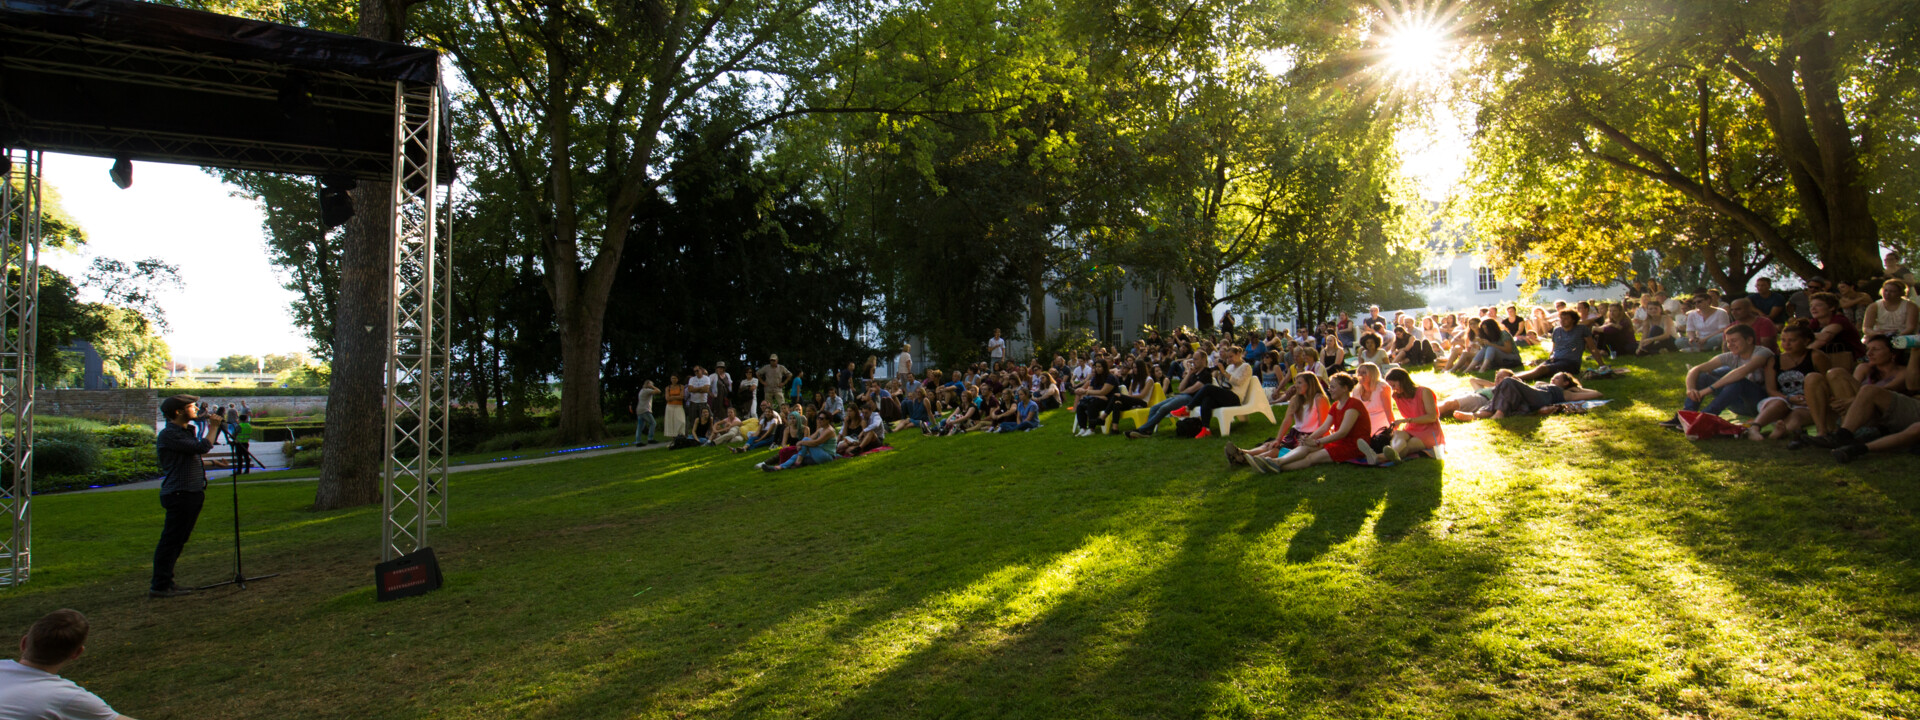 Menschengruppen sitzen auf dem Rasen im Schlosspark und hören einen Dichter zu ©Koblenz-Touristik GmbH, Henry Tornow